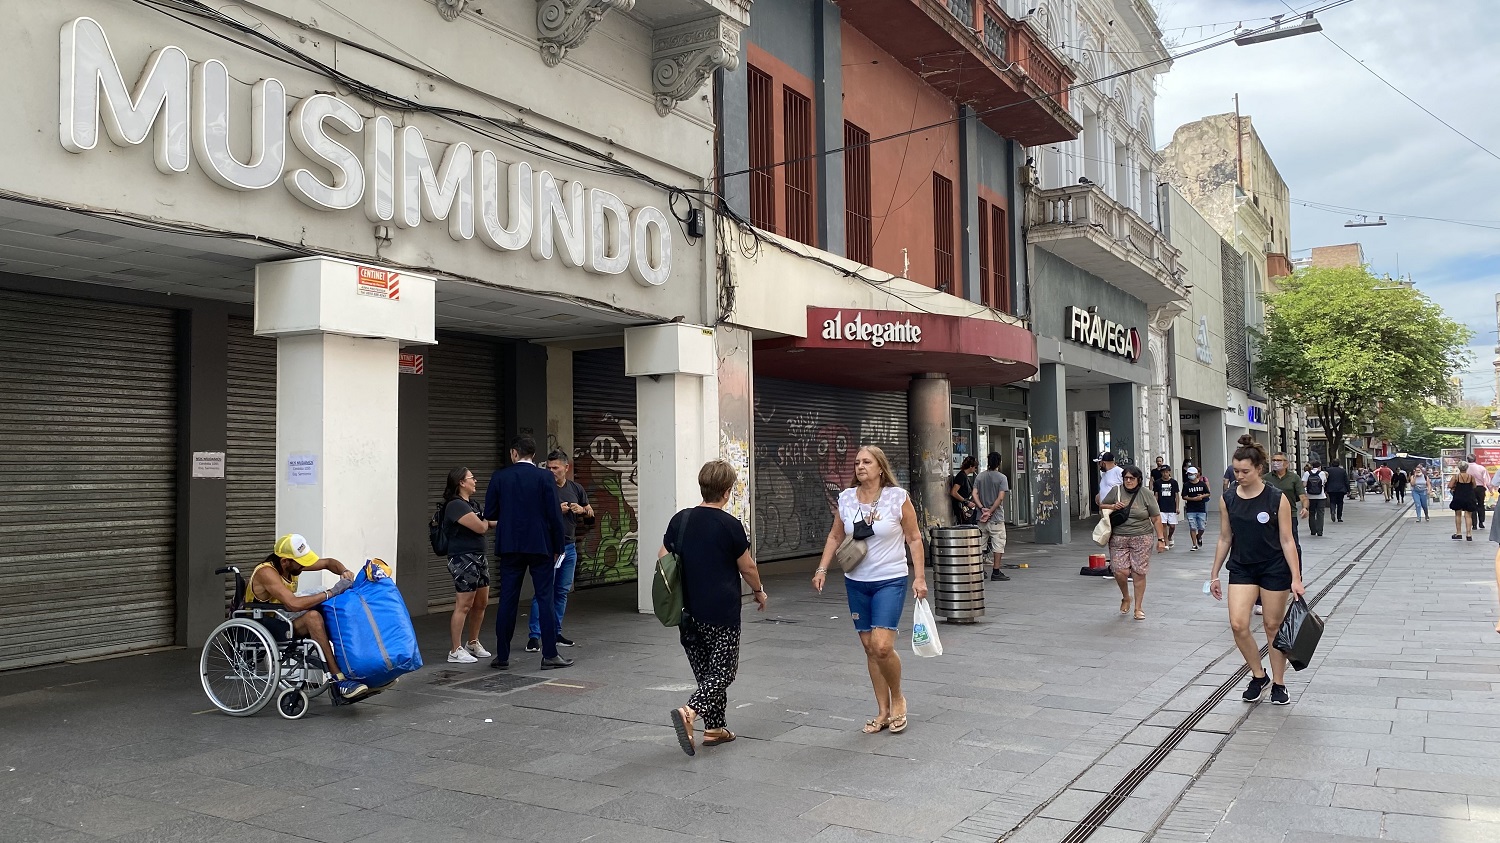 Musimundo cerró el local de Córdoba al 1200 para abrir en su clásica esquina de Sarmiento y Córdoba.